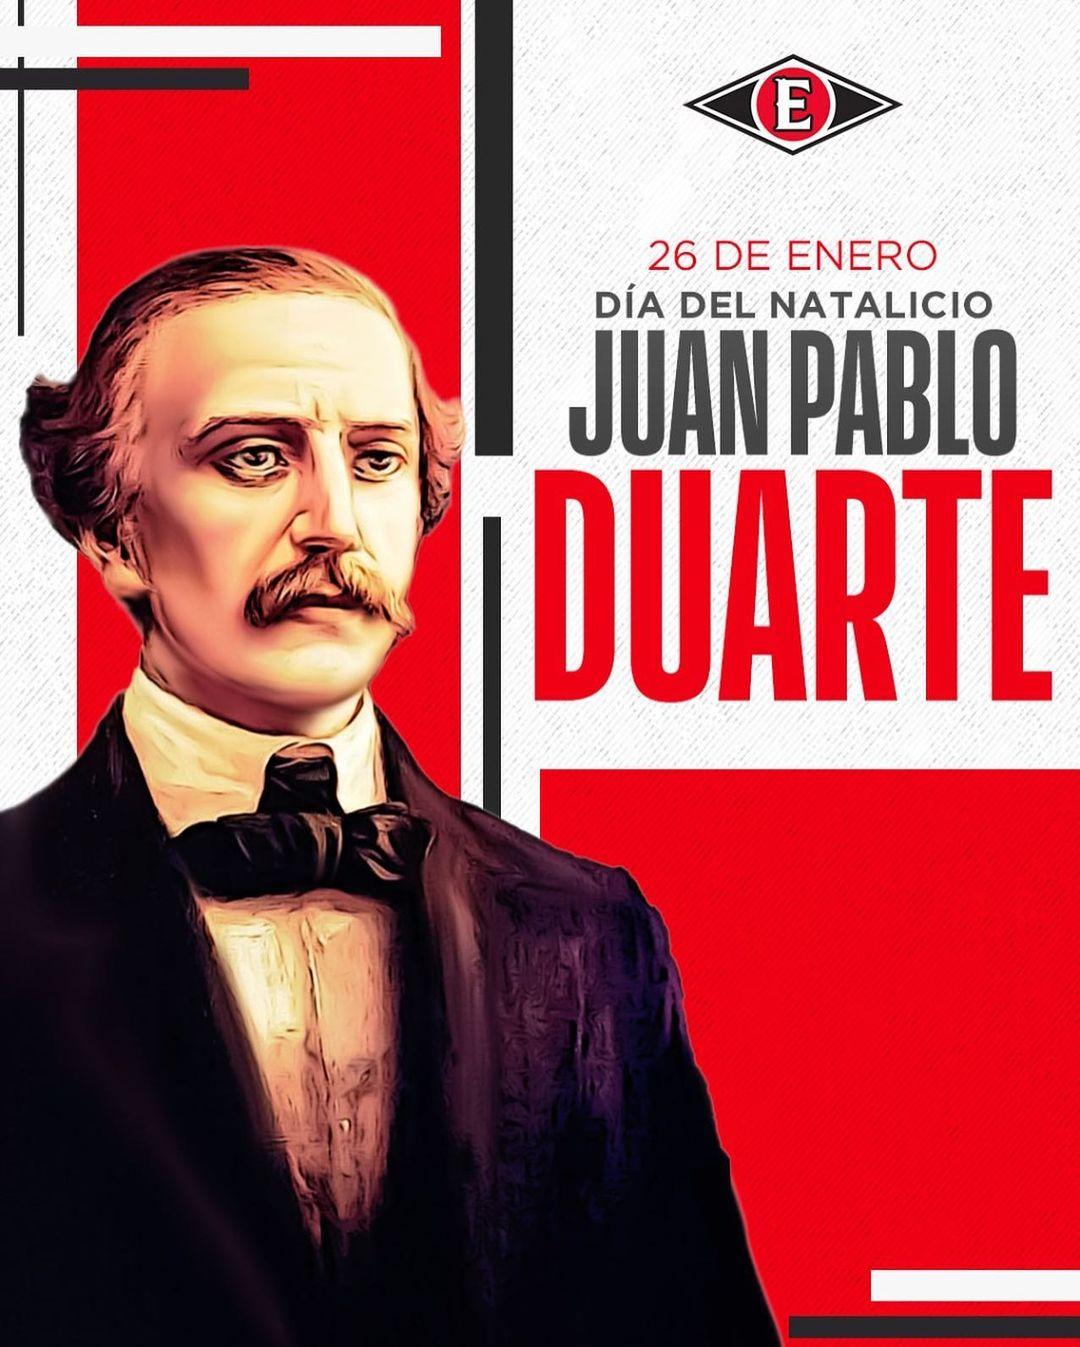 class="content__text"
 Hoy conmemoramos el 210 aniversario del natalicio de Juan Pablo Duarte, Padre de la Patria. 🦁🇩🇴 
 